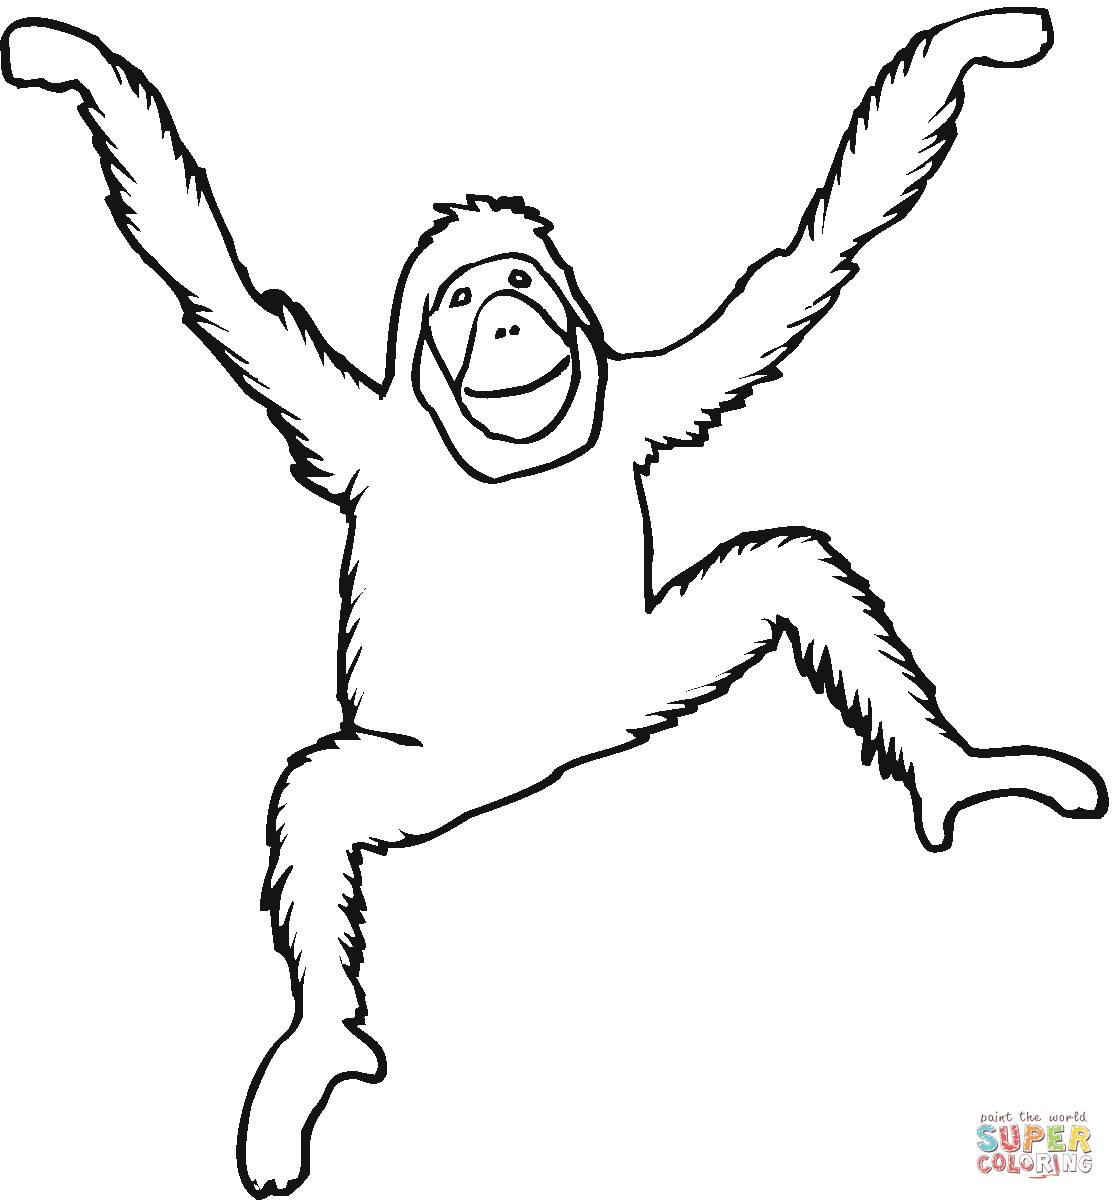 Orangutan coloring #9, Download drawings